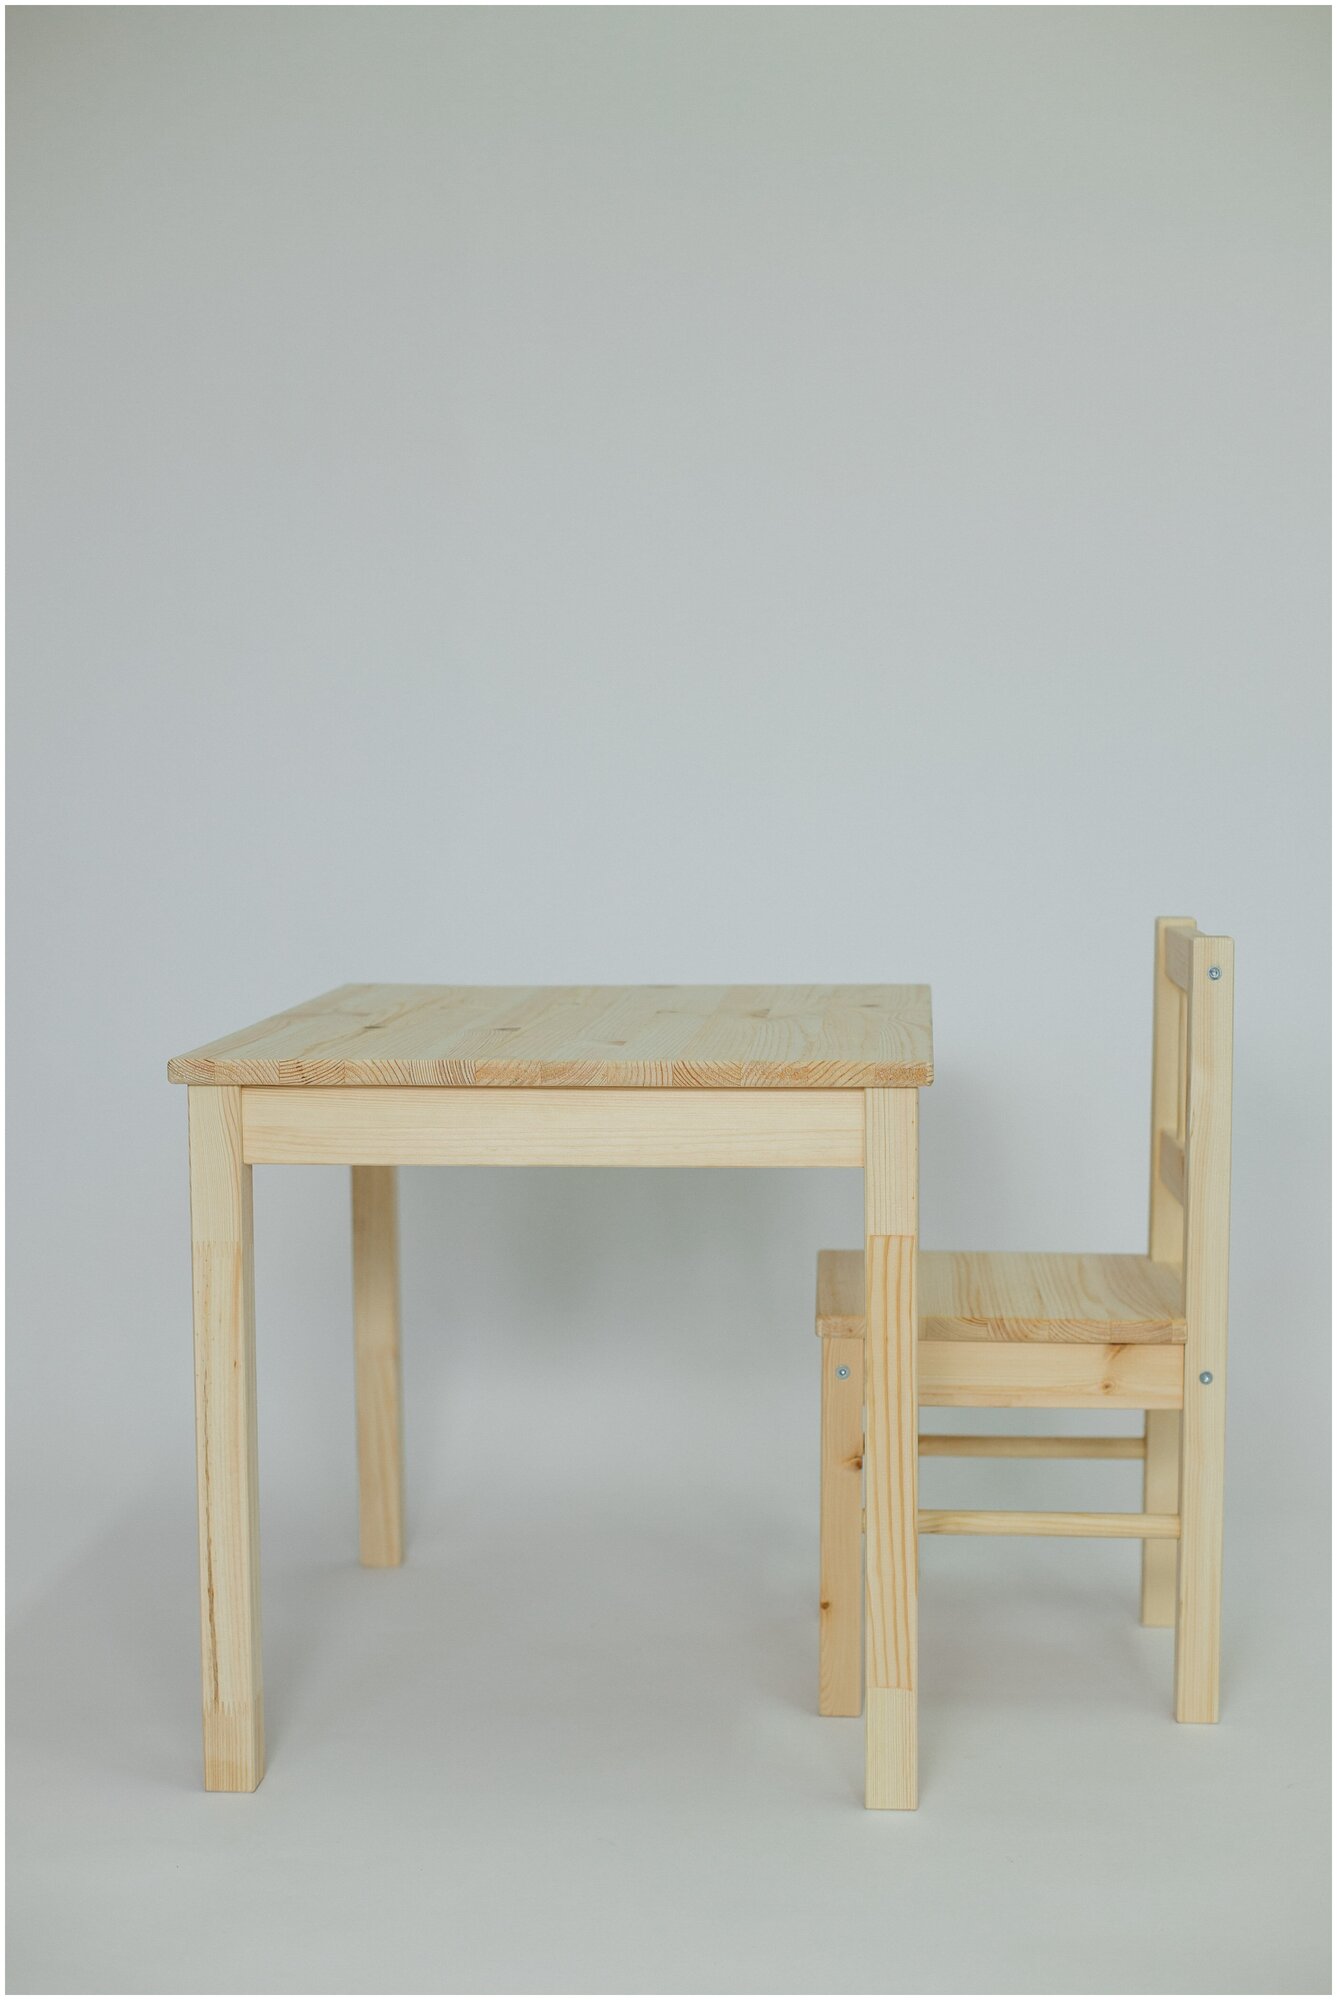 Детский комплект "стол + стул" KETT-UP ECO SVALA, KU347, натур, деревянный